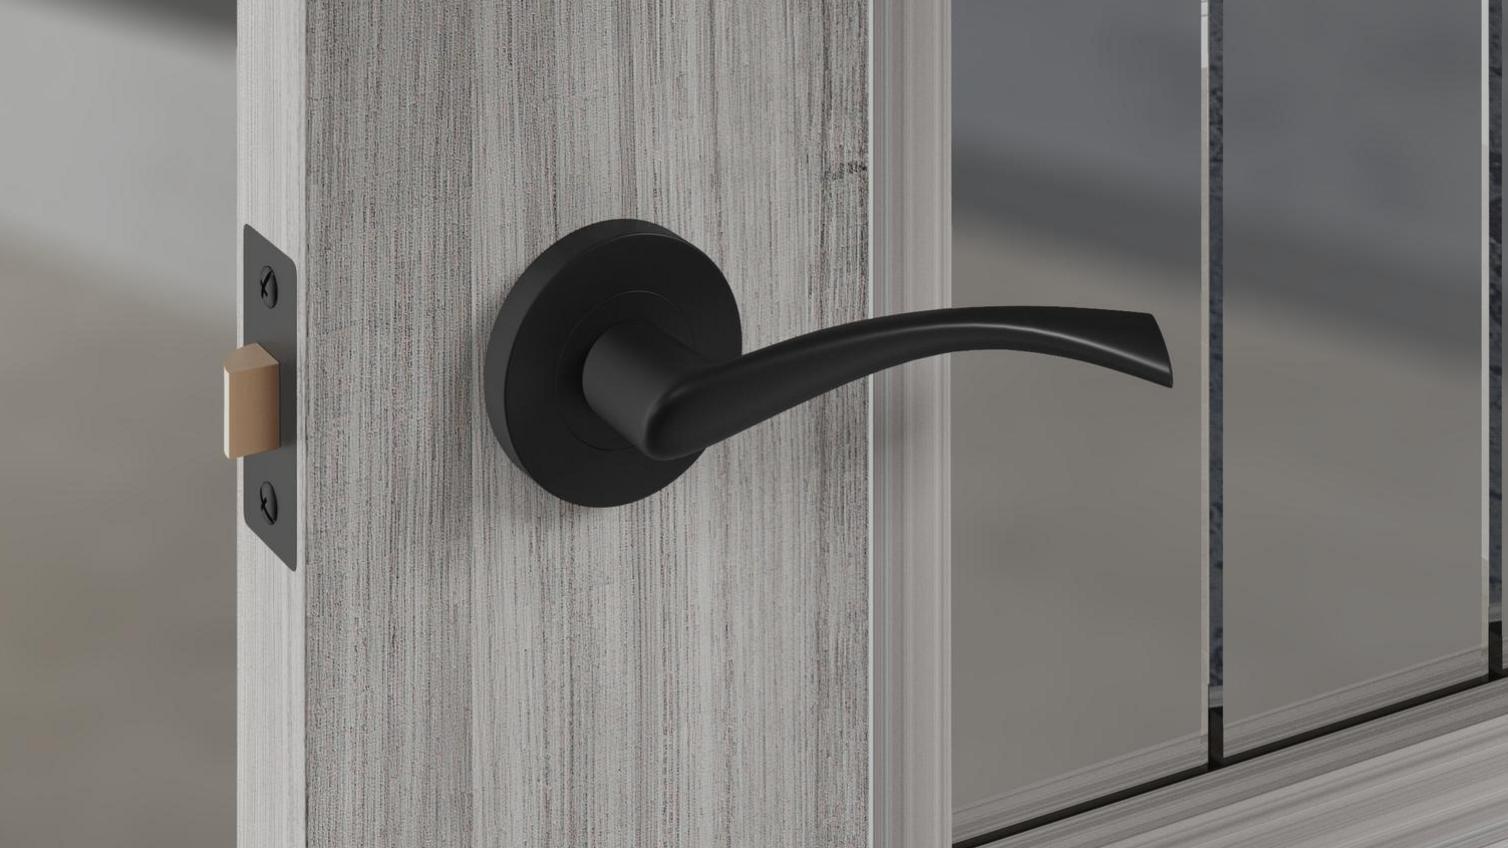 A black curved door handle on a grained, grey door.